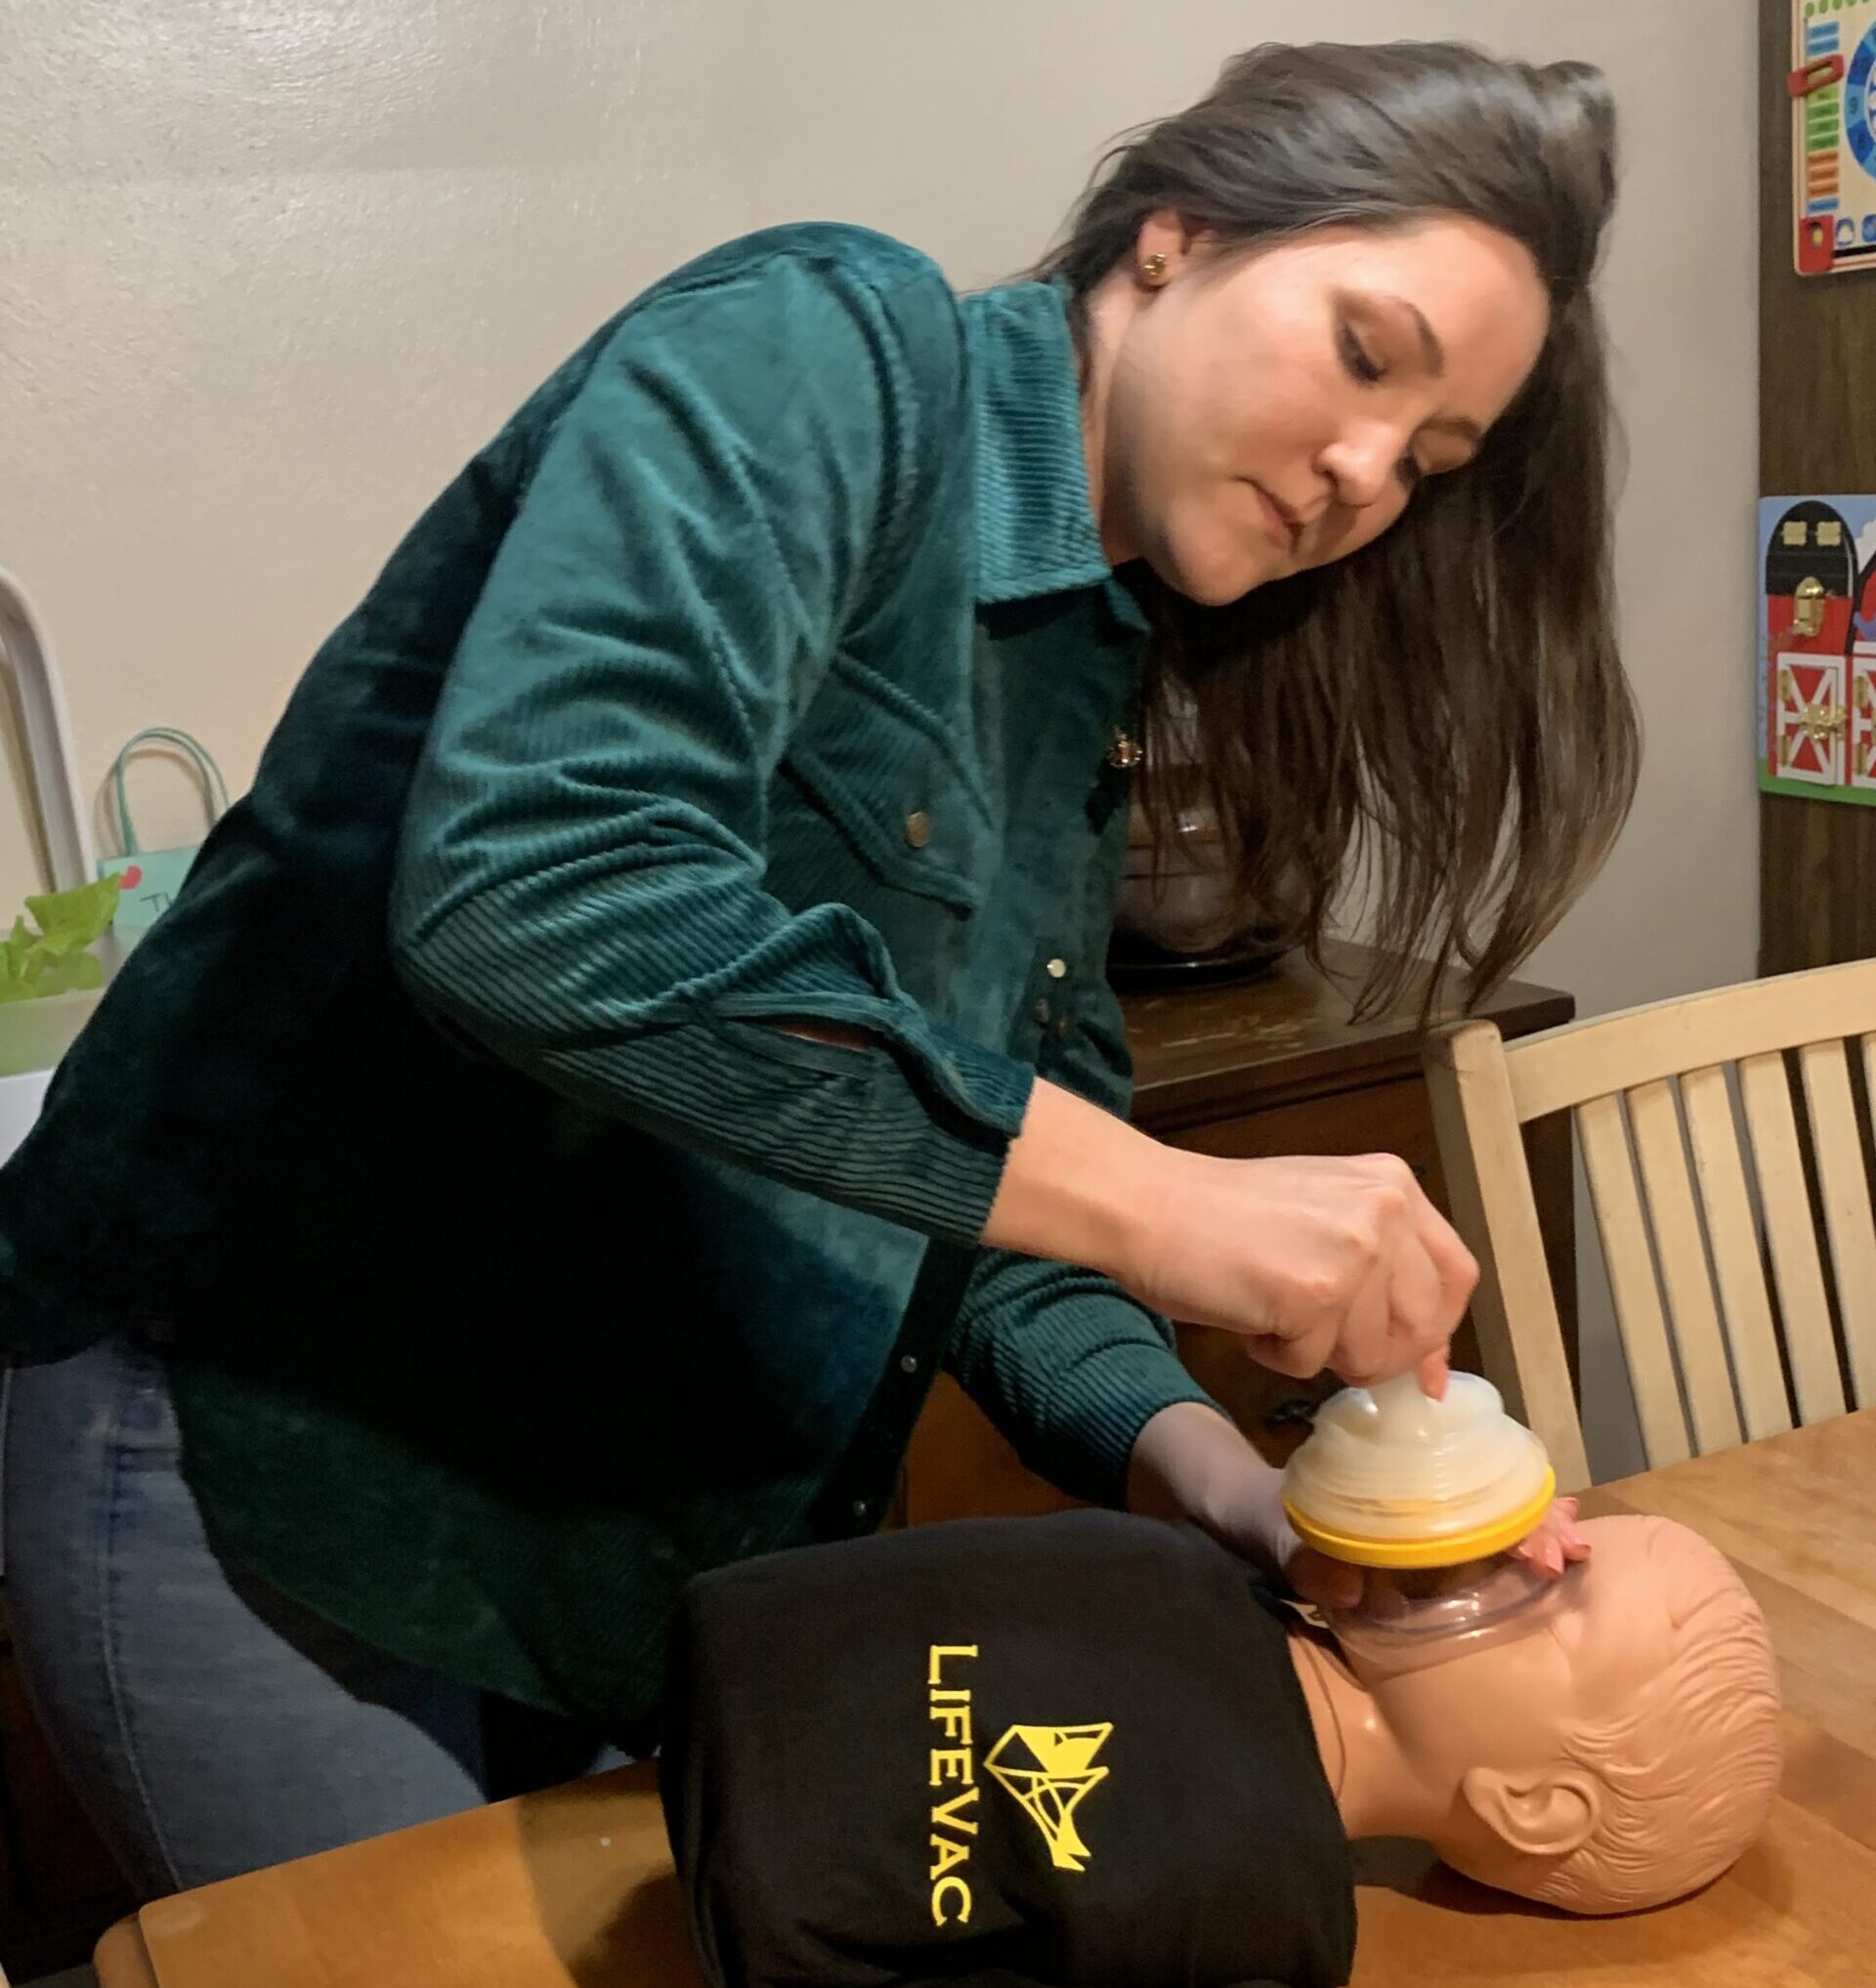 LifeVac to donate life-saving anti-choking device to every US school